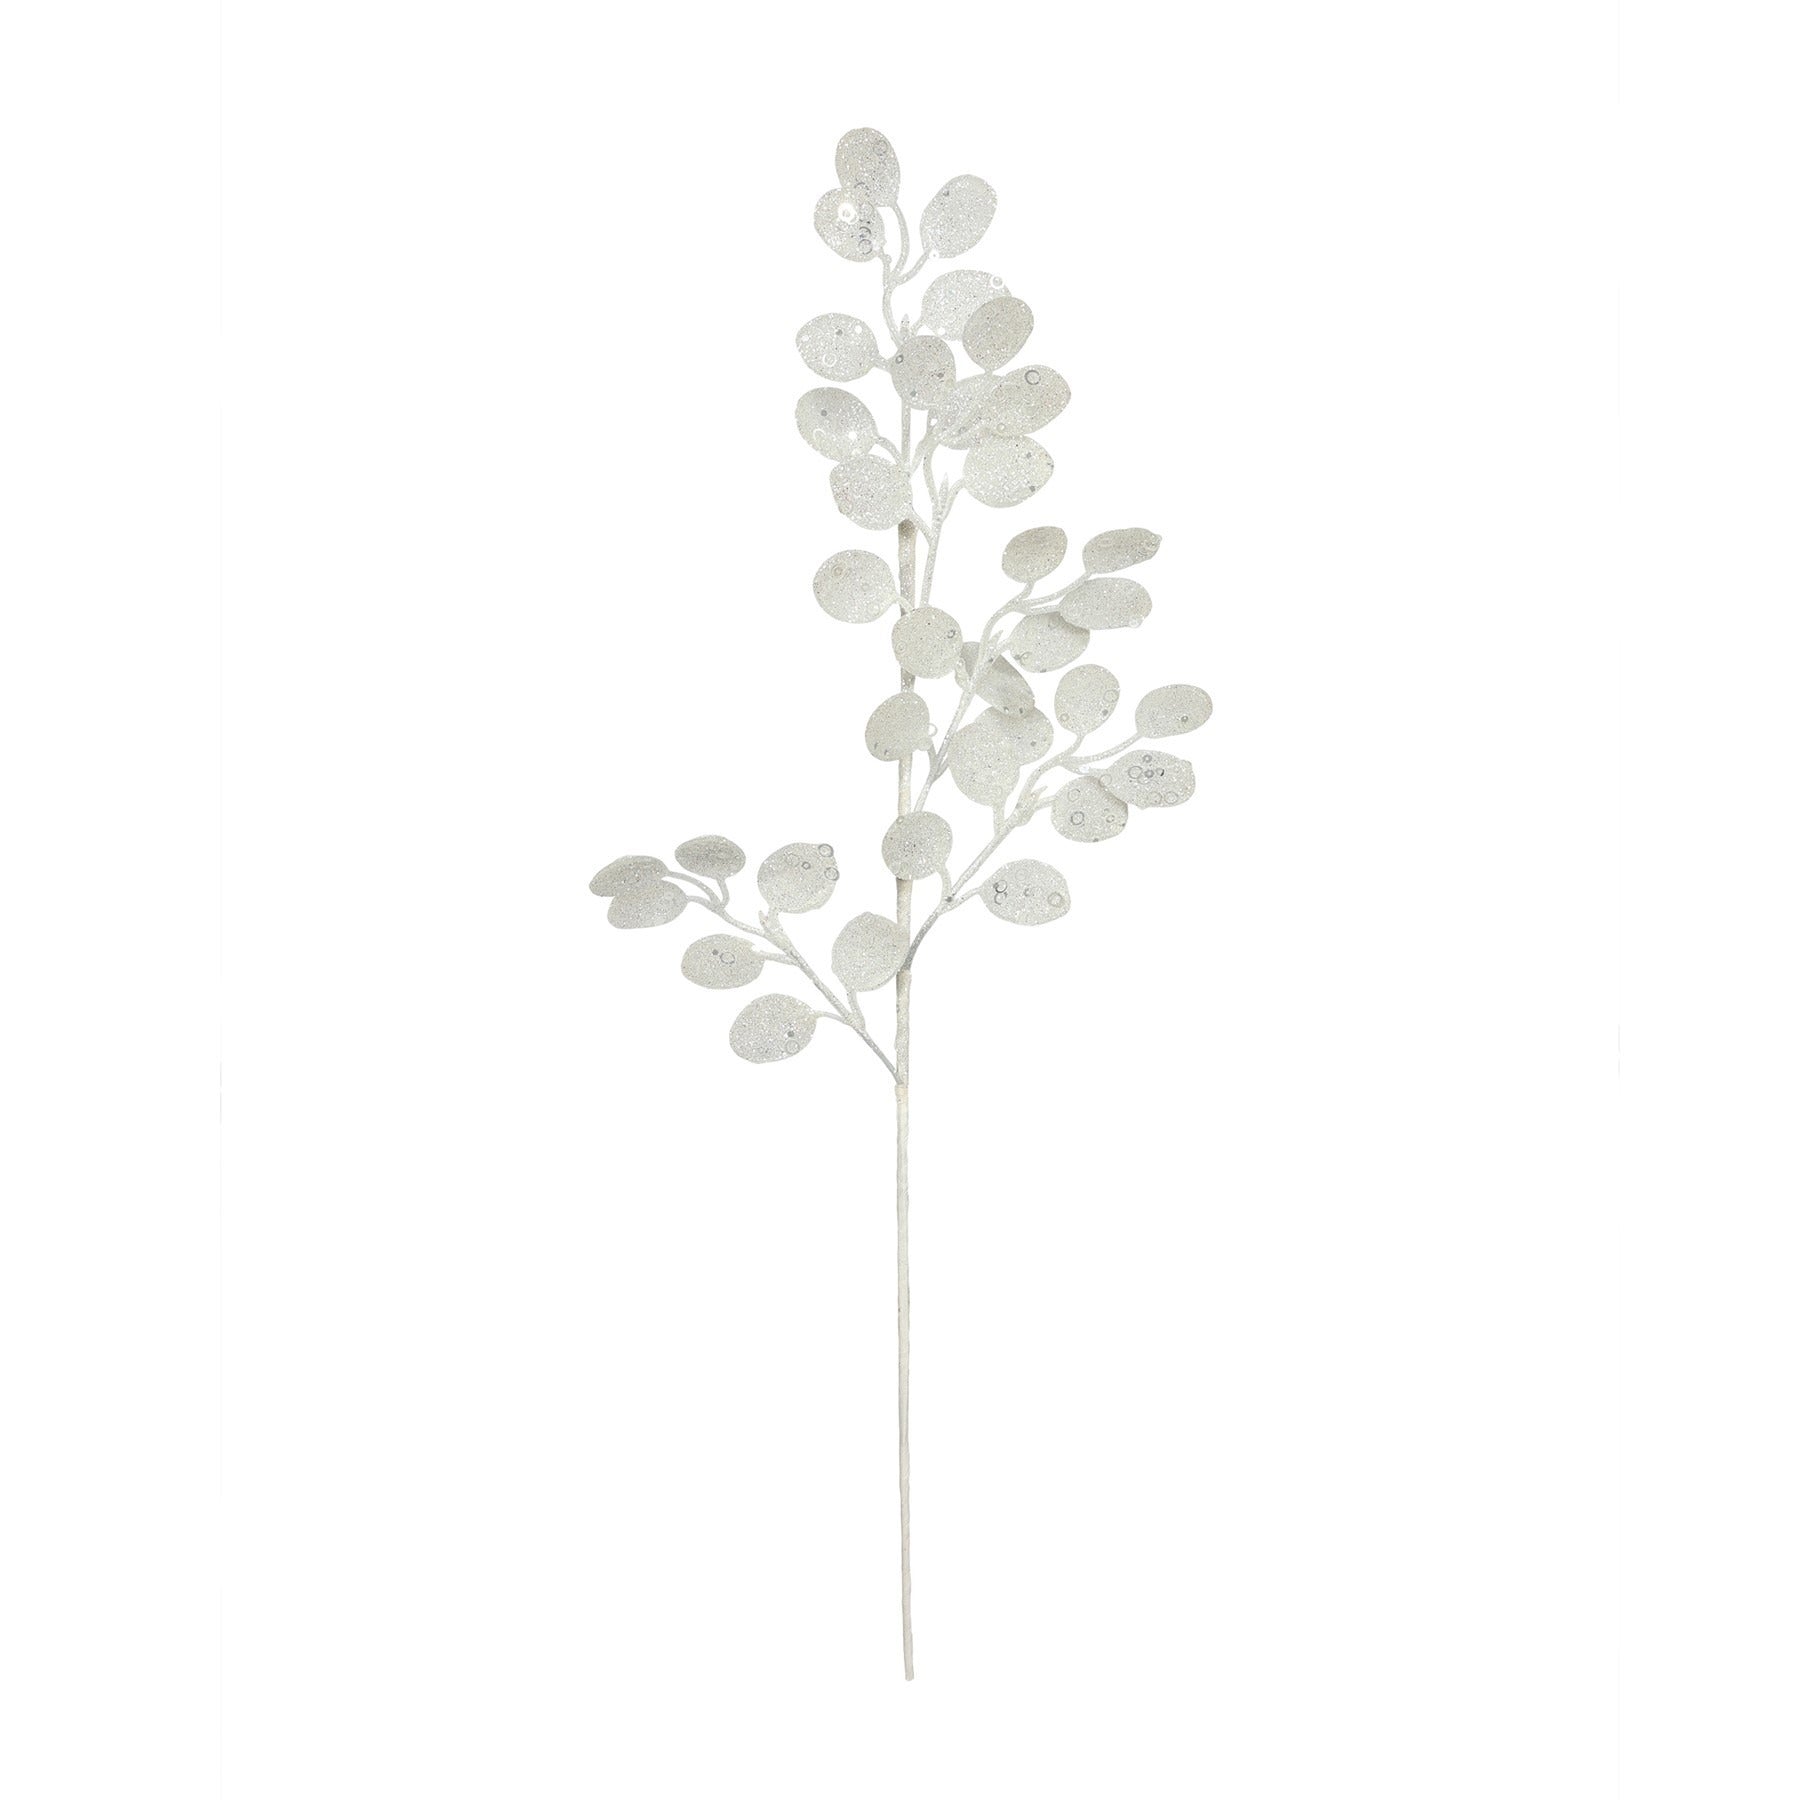 View White Glitter Eucalyptus Stem H61cm information